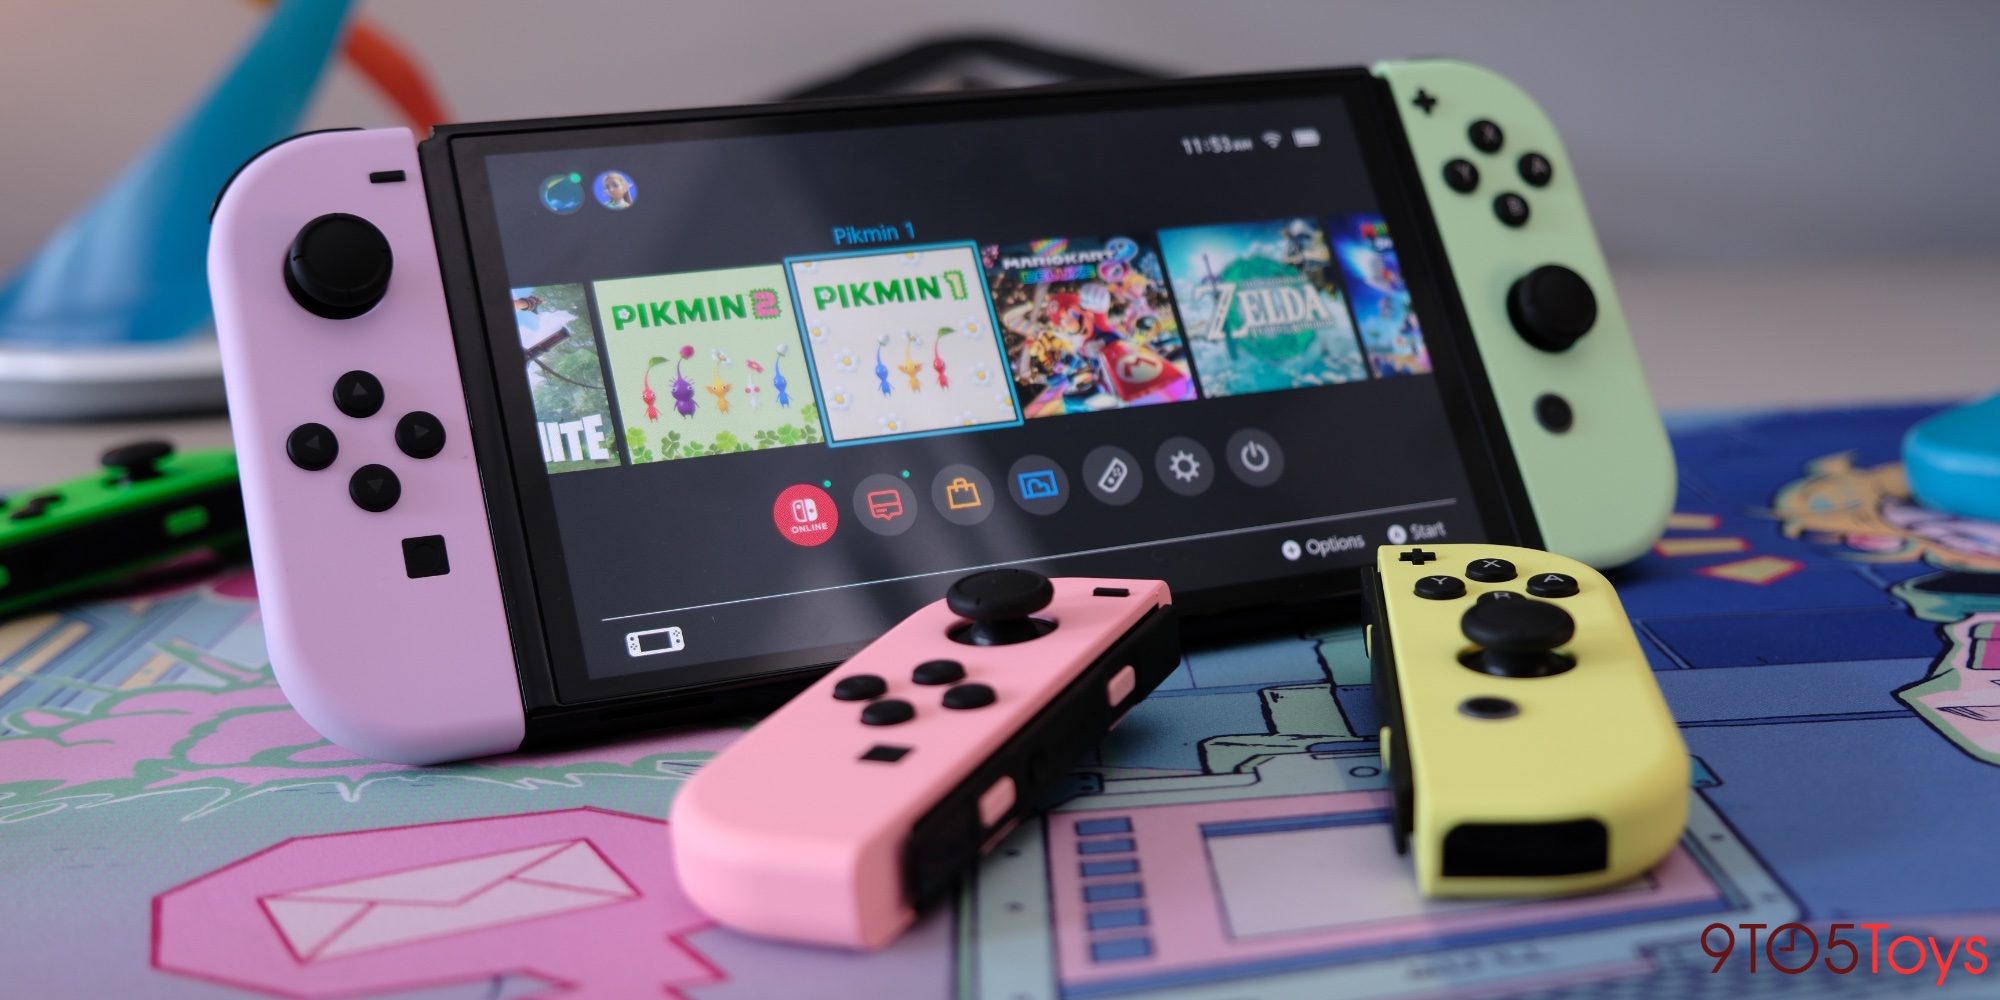 Nintendo Switch: All the Joy-Con Designs Released So Far